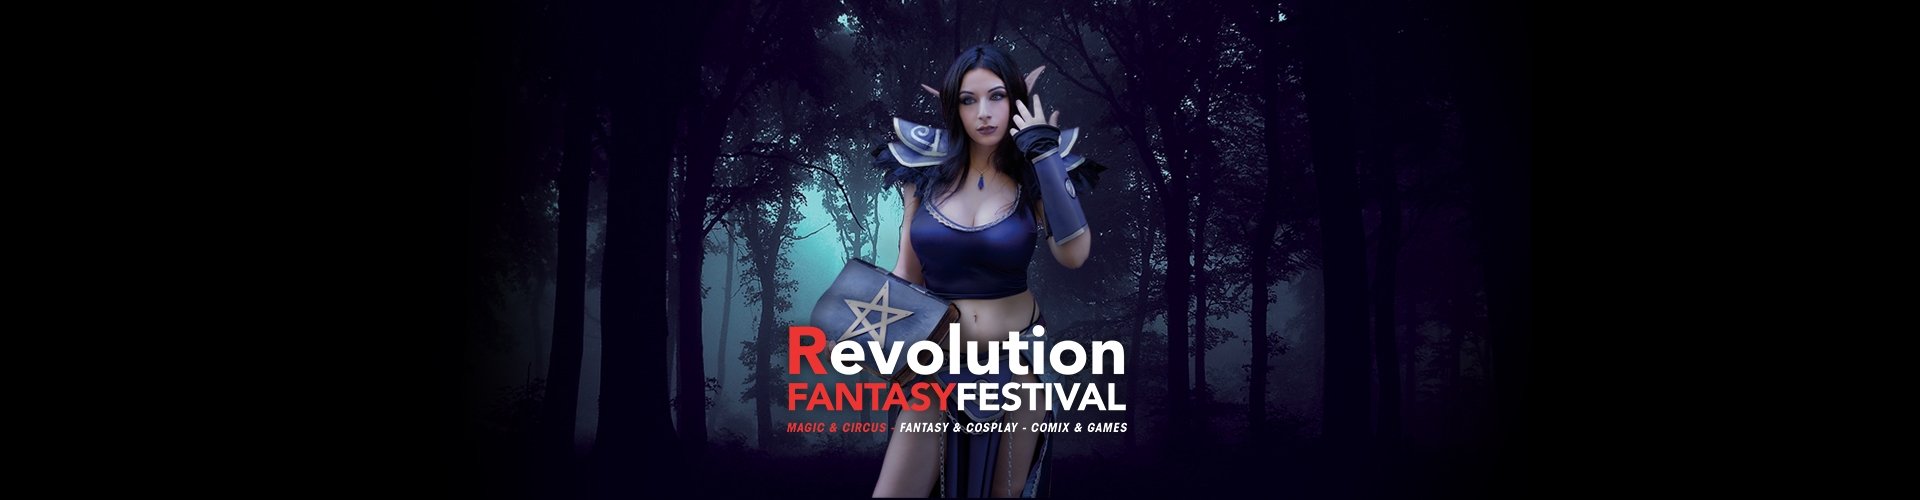 Revolution Fantasy Festival